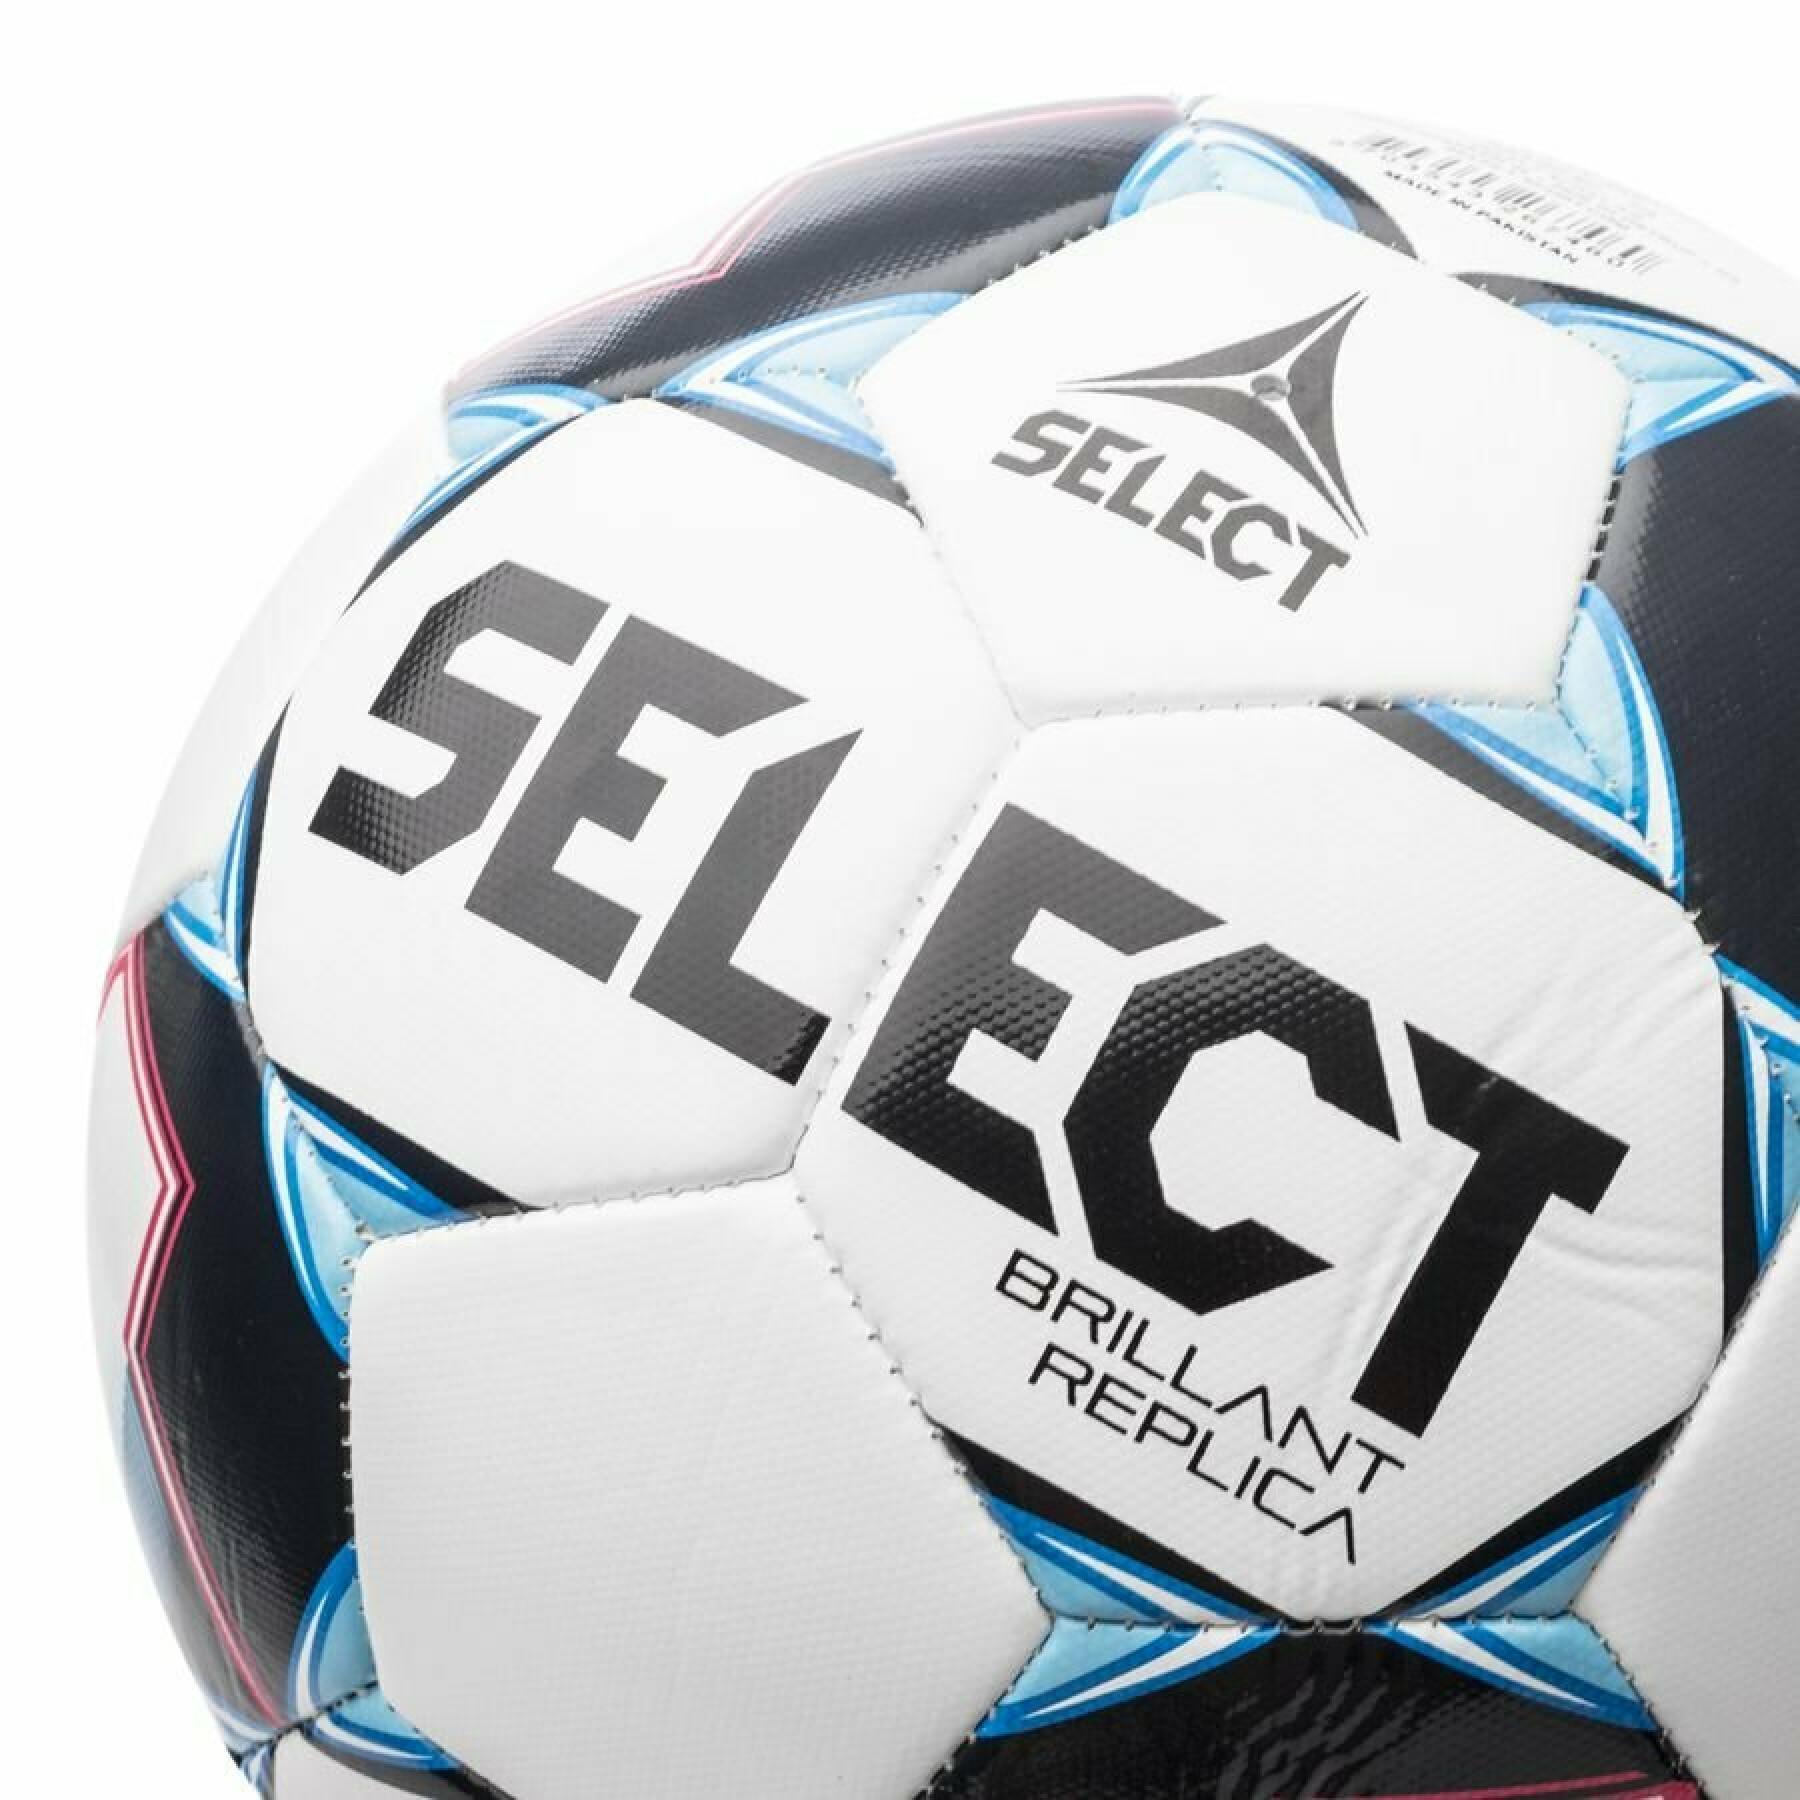 Balón Select Brillant Replica V21